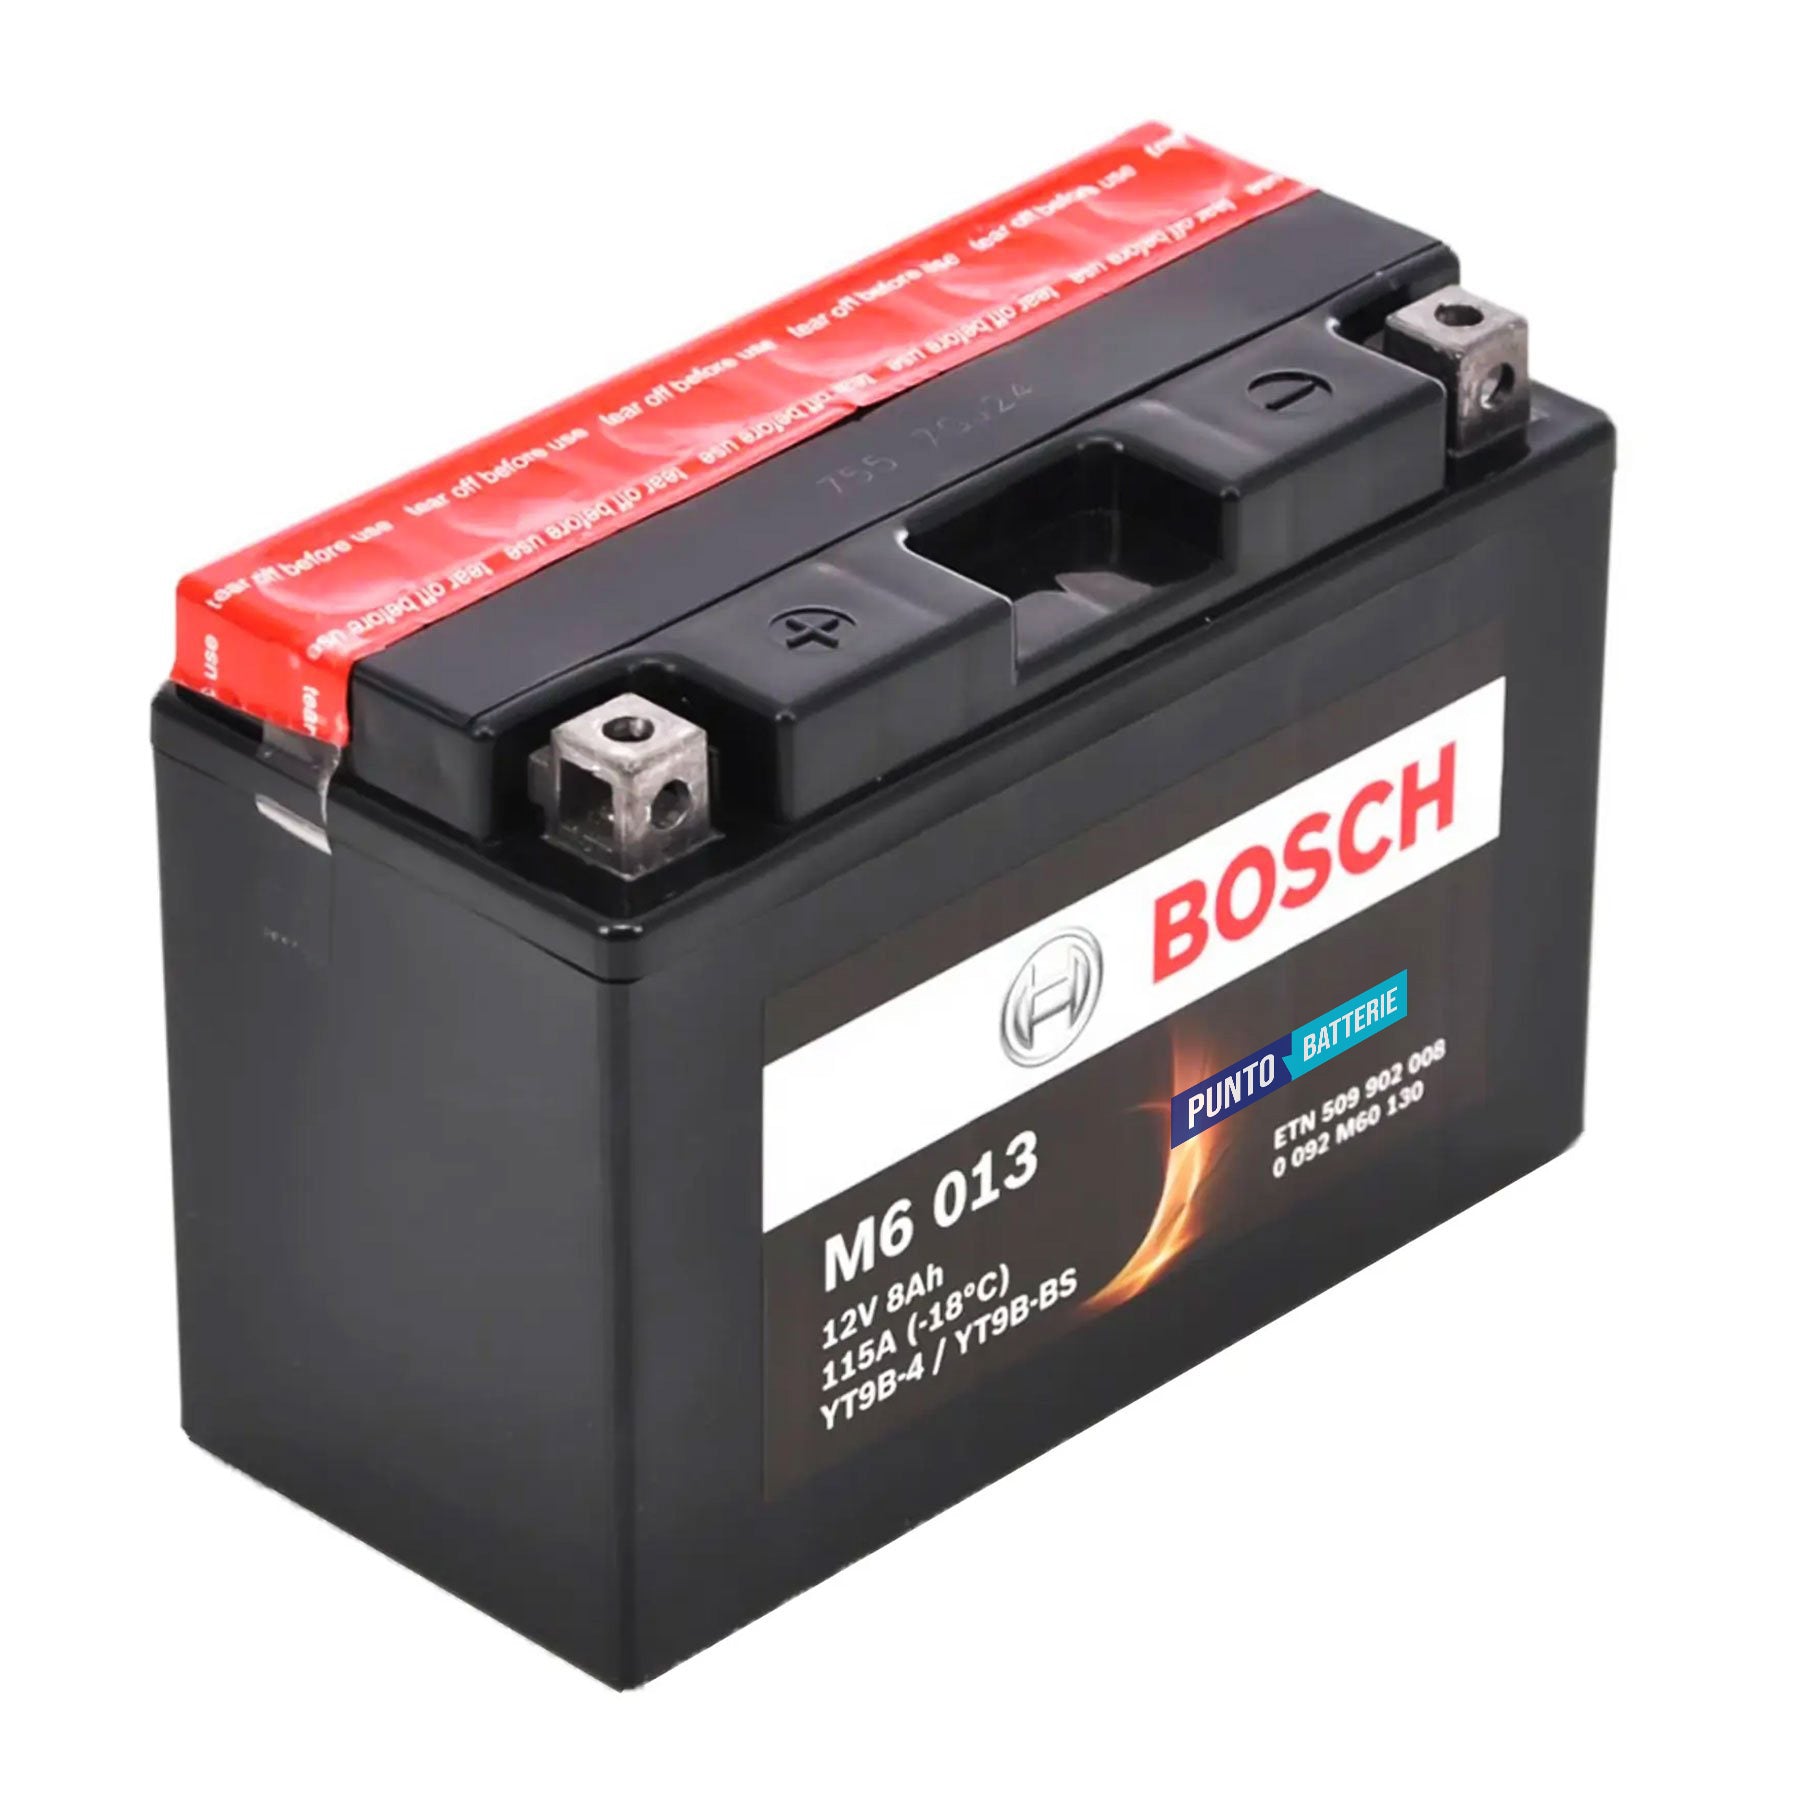 Batteria originale Bosch M6 M6013, dimensioni 150 x 87 x 105, polo positivo a sinistra, 12 volt, 8 amperora, 115 ampere. Batteria per moto, scooter e powersport.